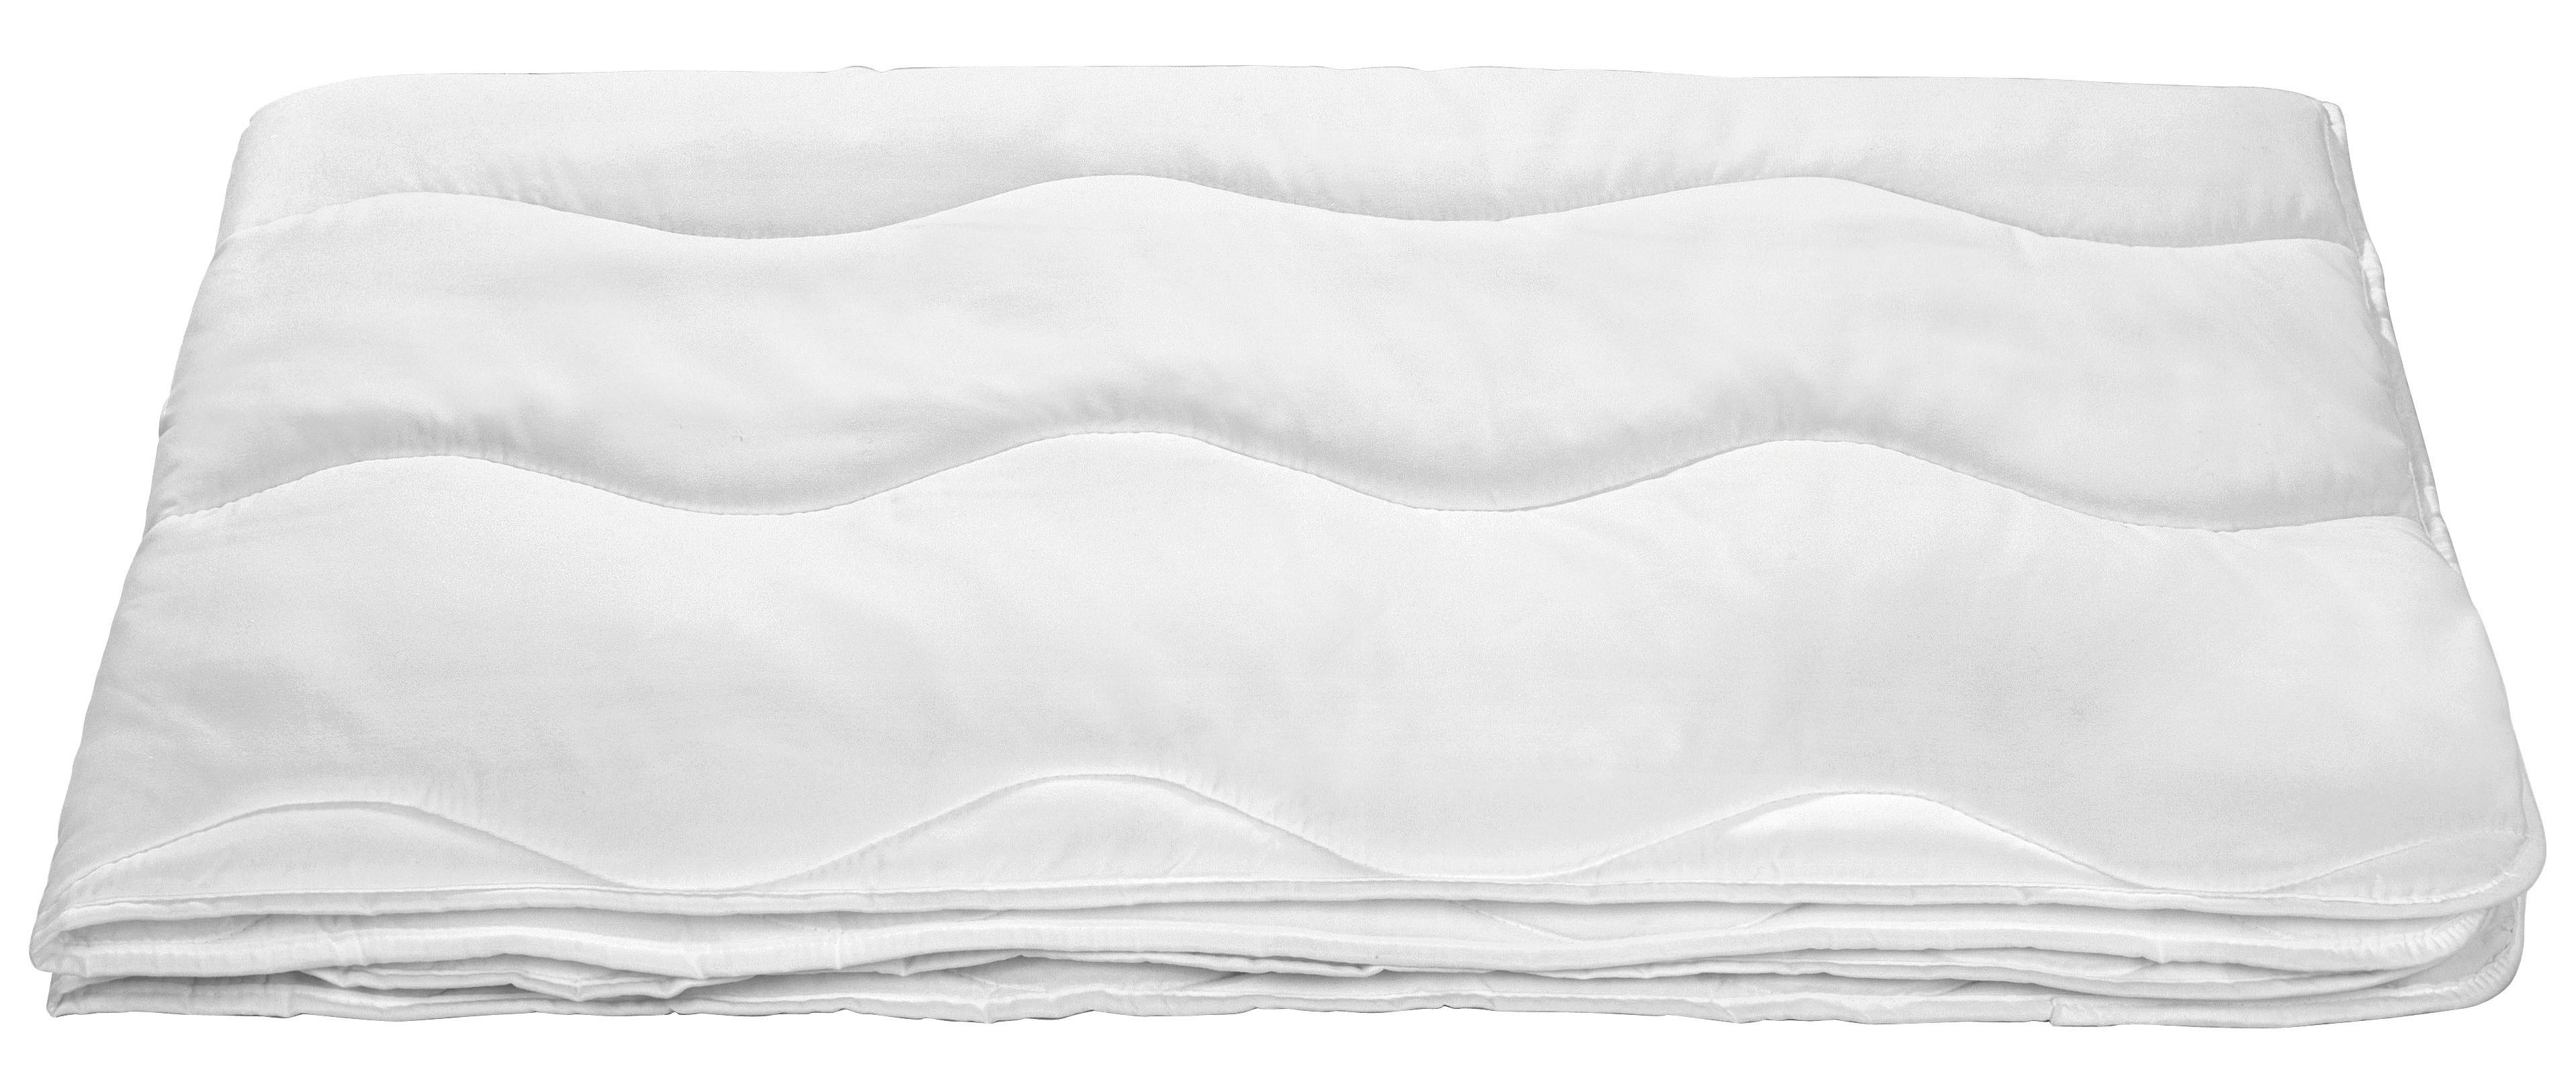 Steppdecke Linda Leicht 140x200 cm Waschbar - Weiß, KONVENTIONELL, Textil (140/200cm) - Primatex